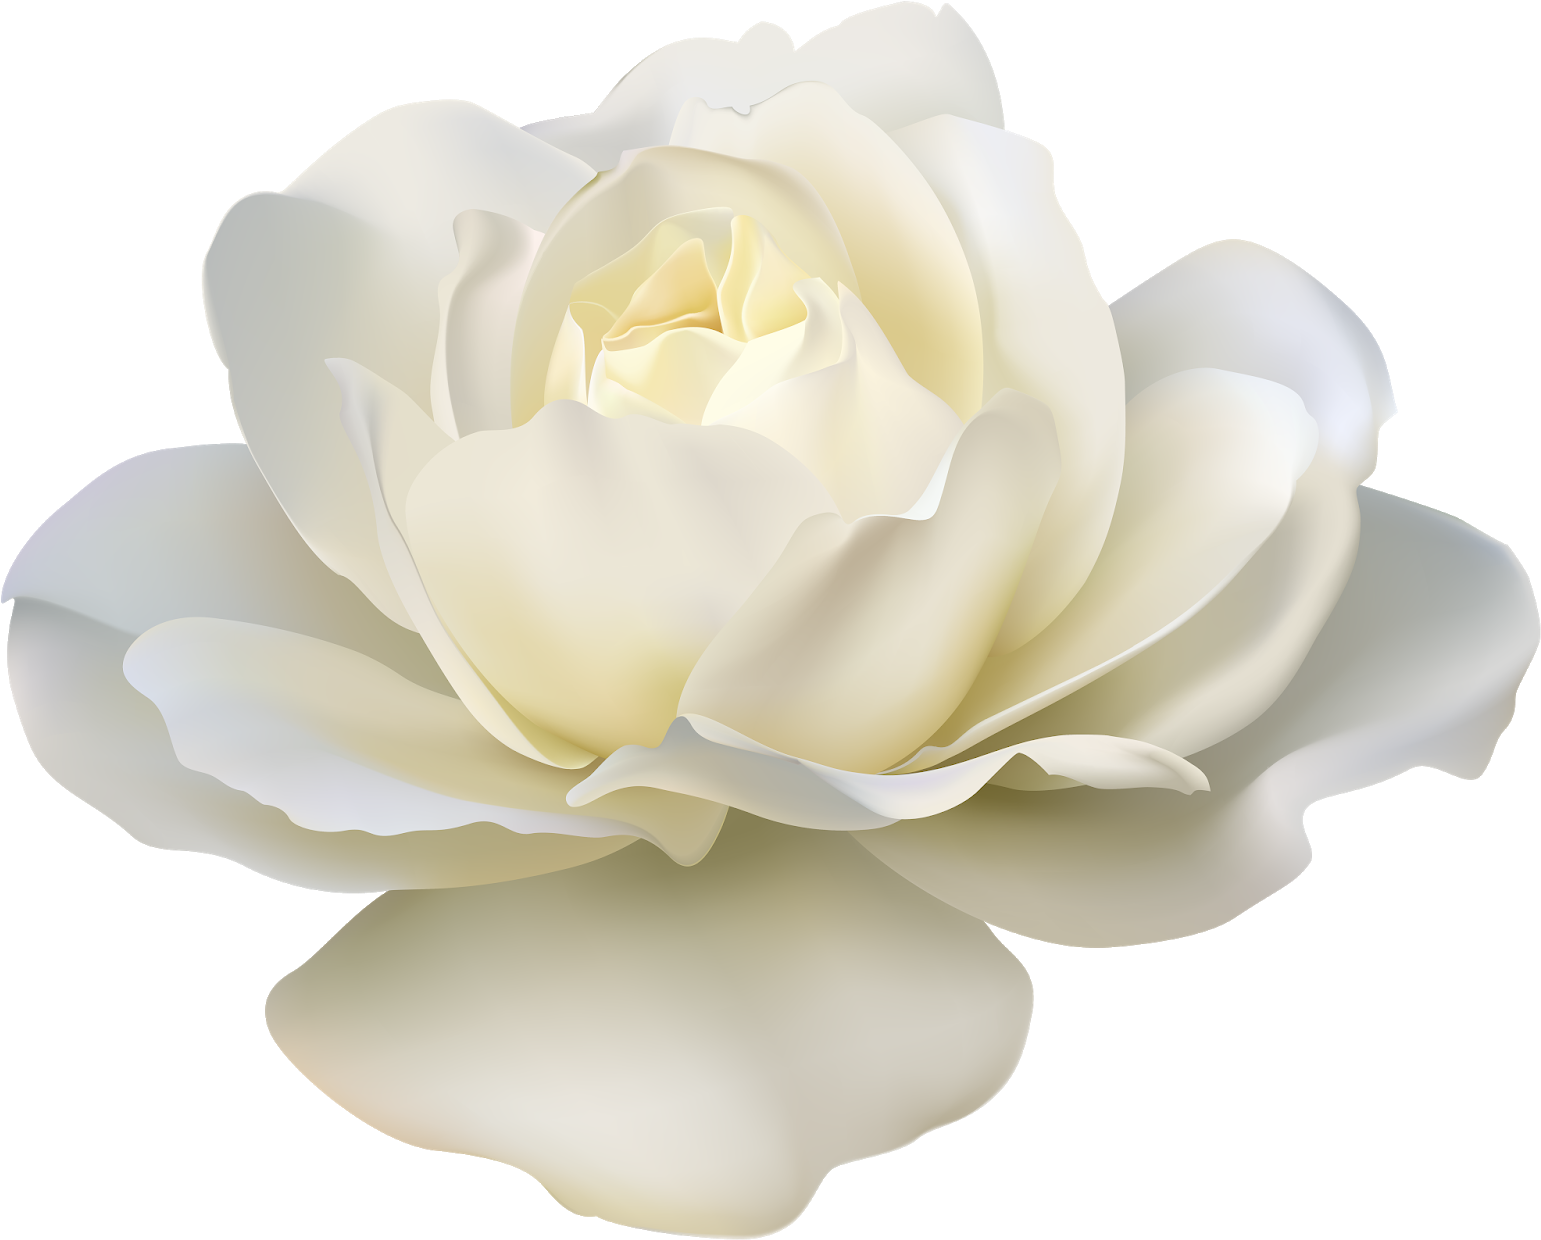 Rose Flower White Transparent White Roses Png